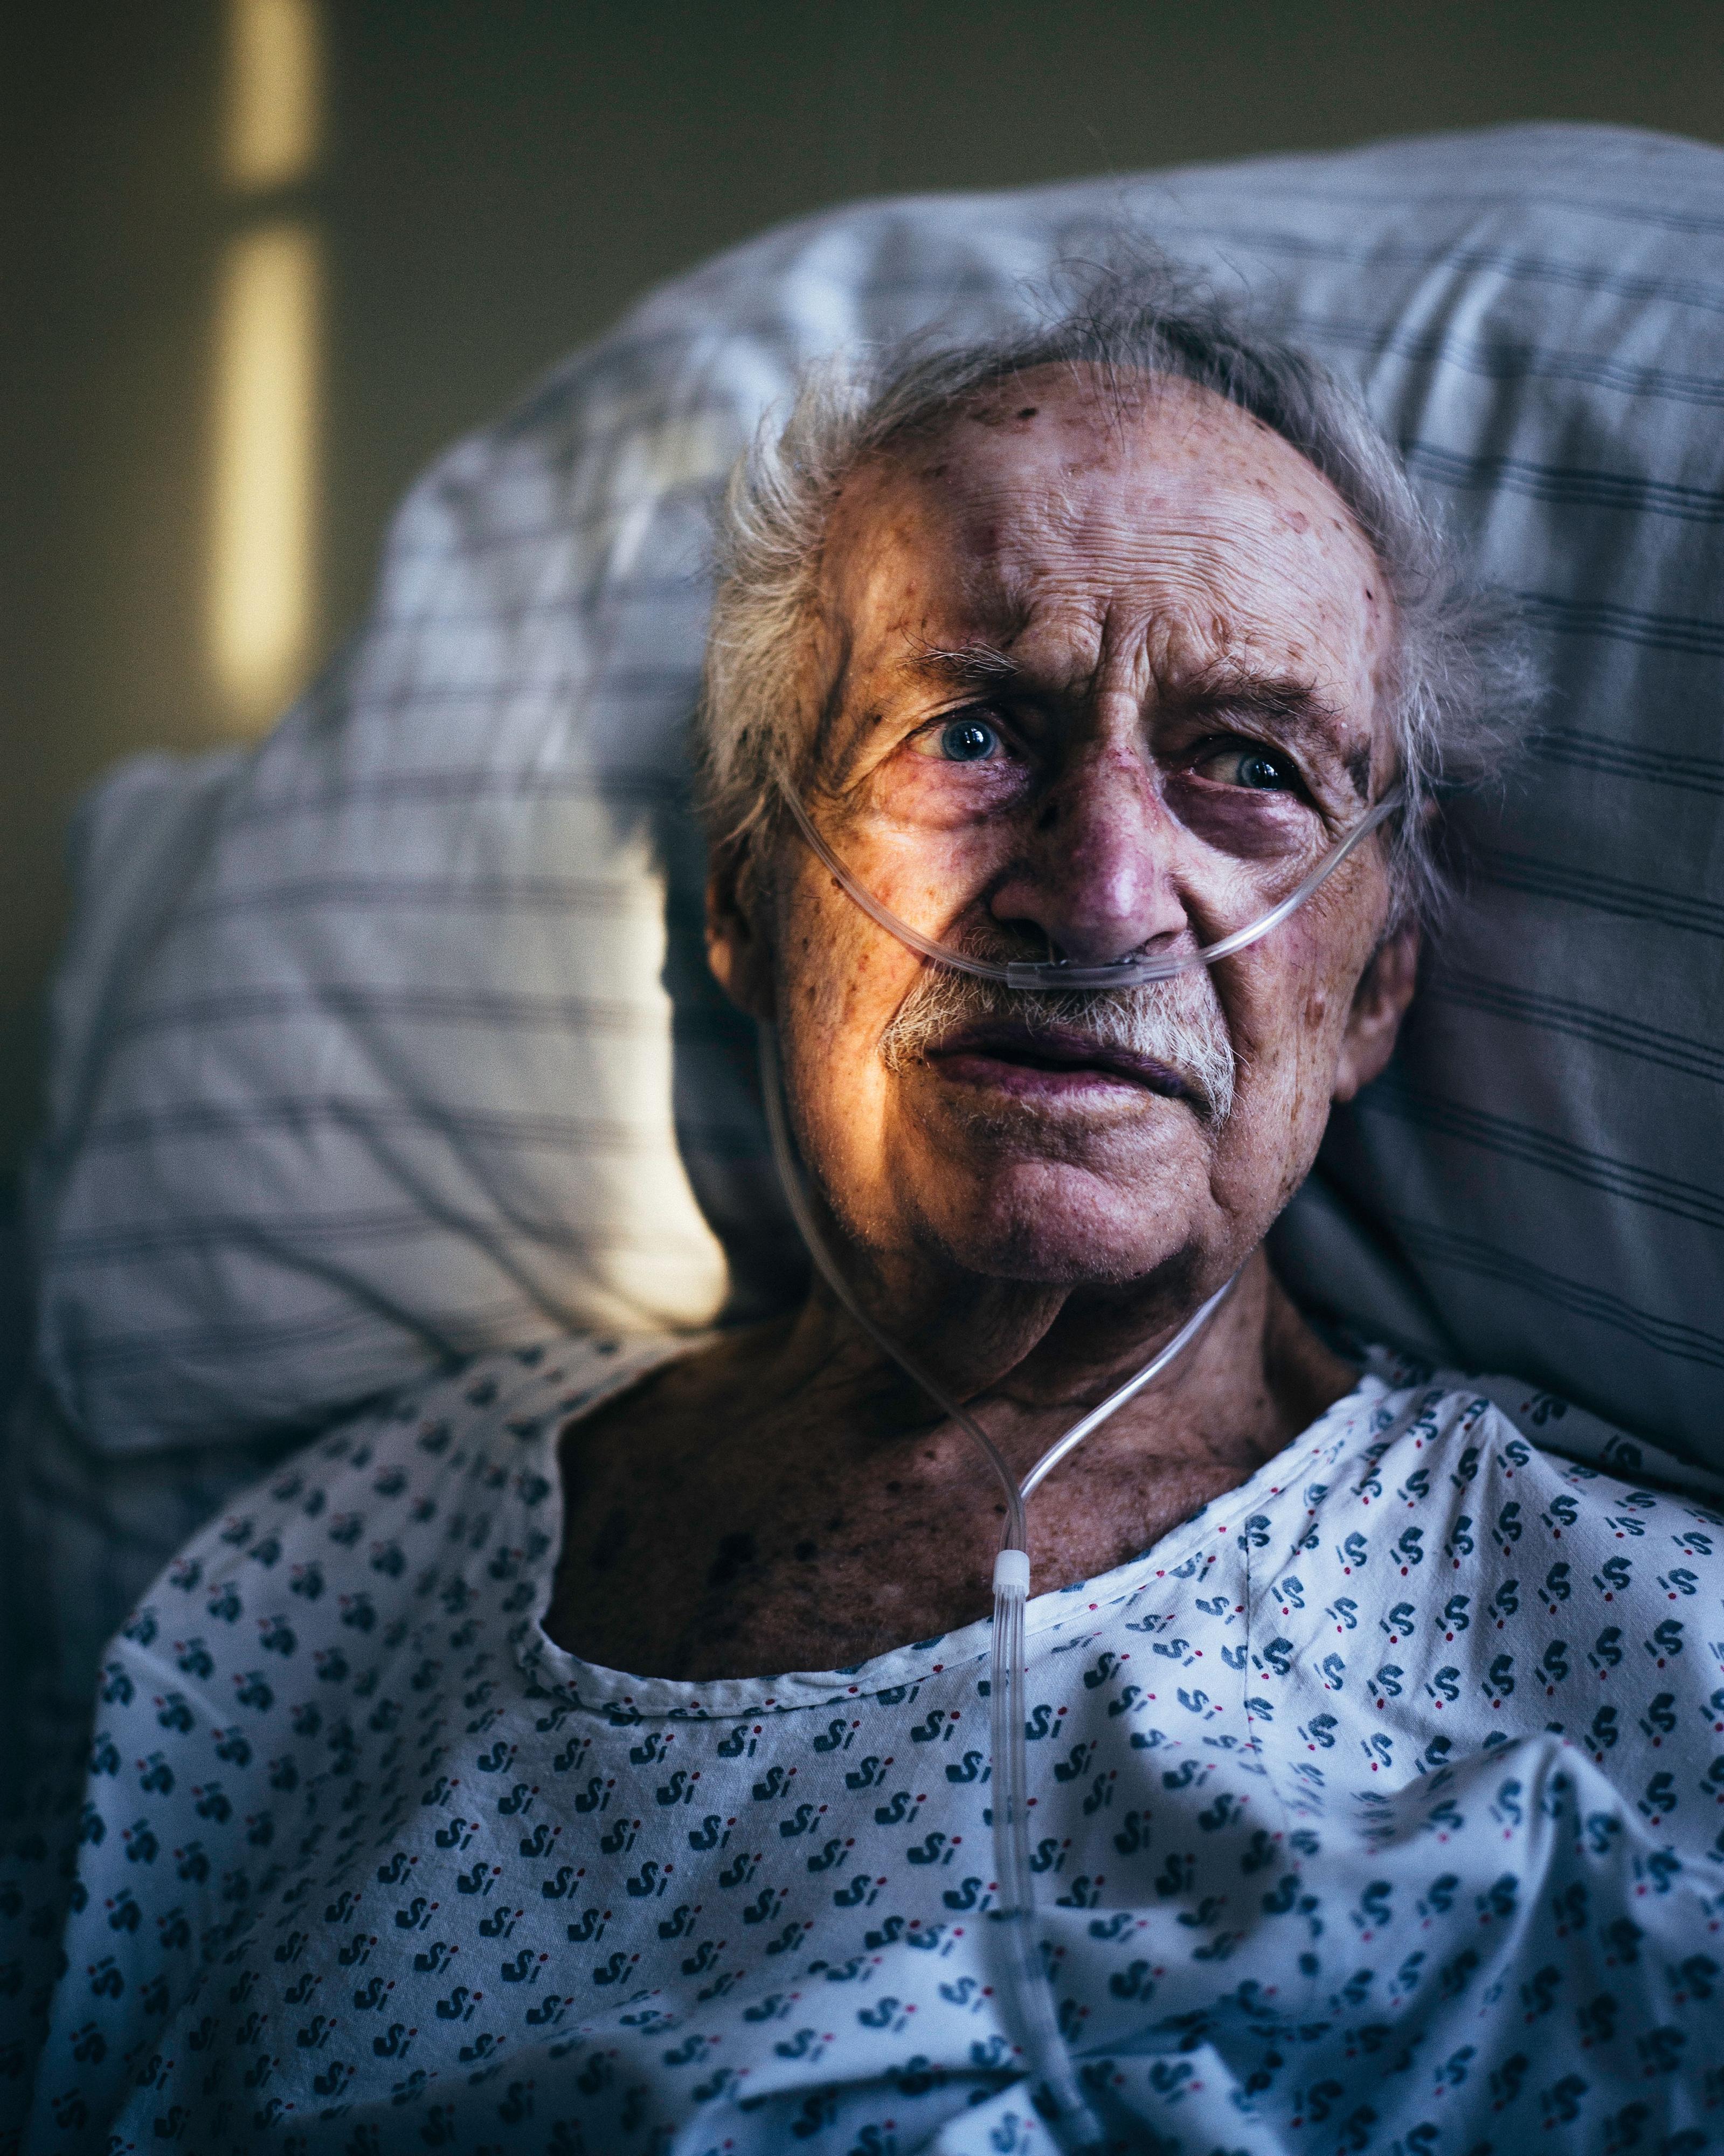 Ein älterer Mann liegt in einem Krankenhausbett - er bekommt Sauerstoff durch Schläuche in der Nase.